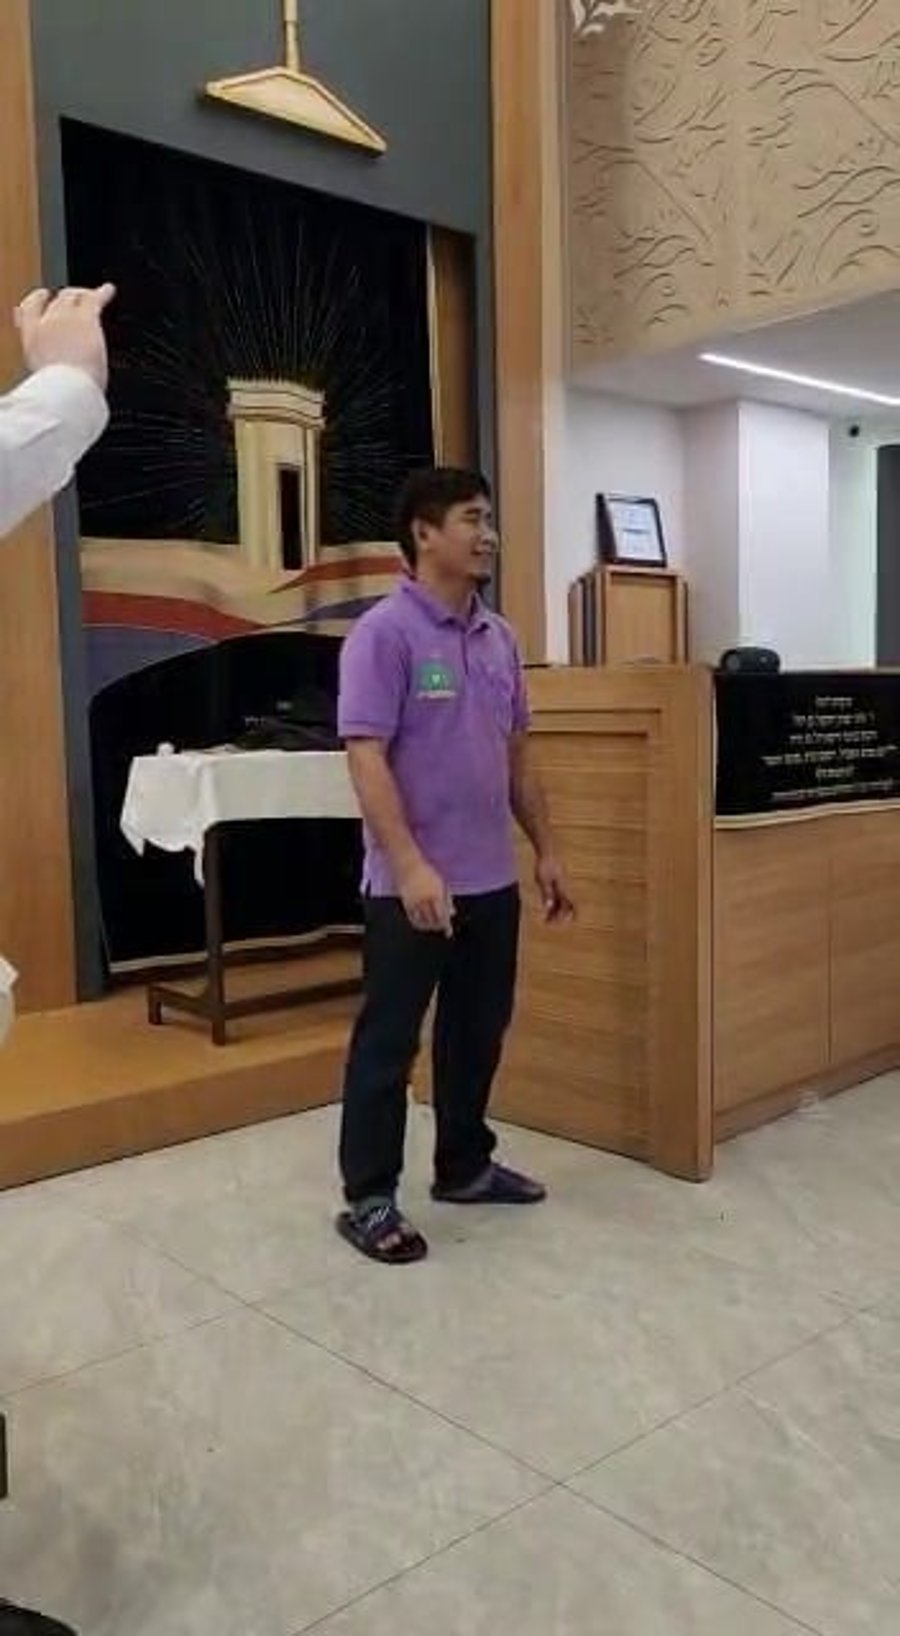 צפו: העובד הגוי בבית חב"ד בתאילנד שר 'ויהי שעמדה'